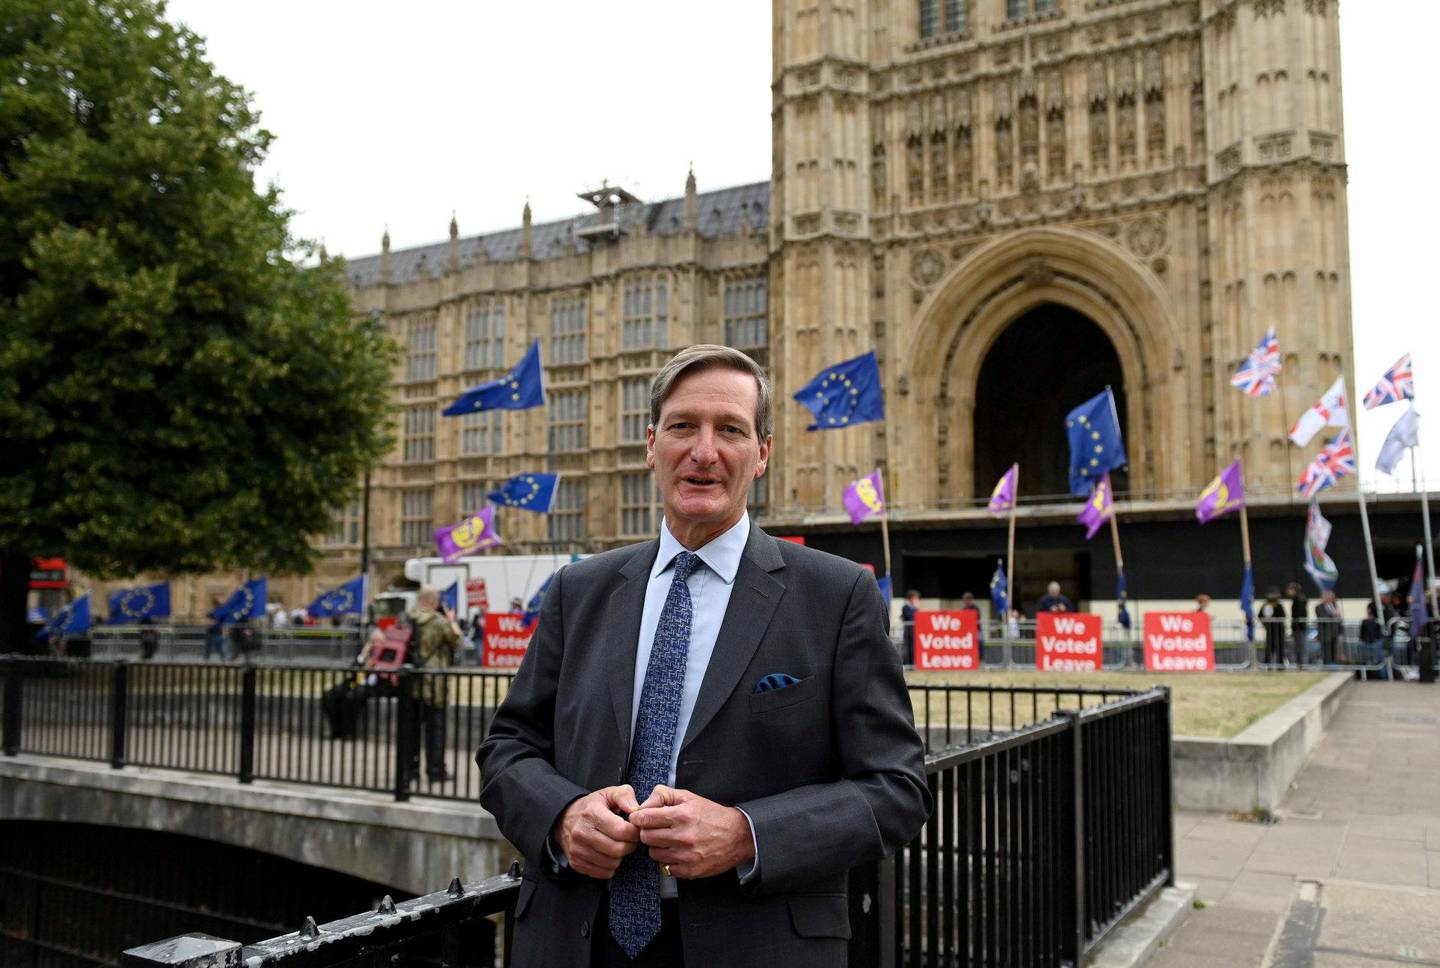 GÅR IMOT: Den britiske konservative politikeren er blant dem som går imot egen statsminister. FOTO: NTB SCANPIX